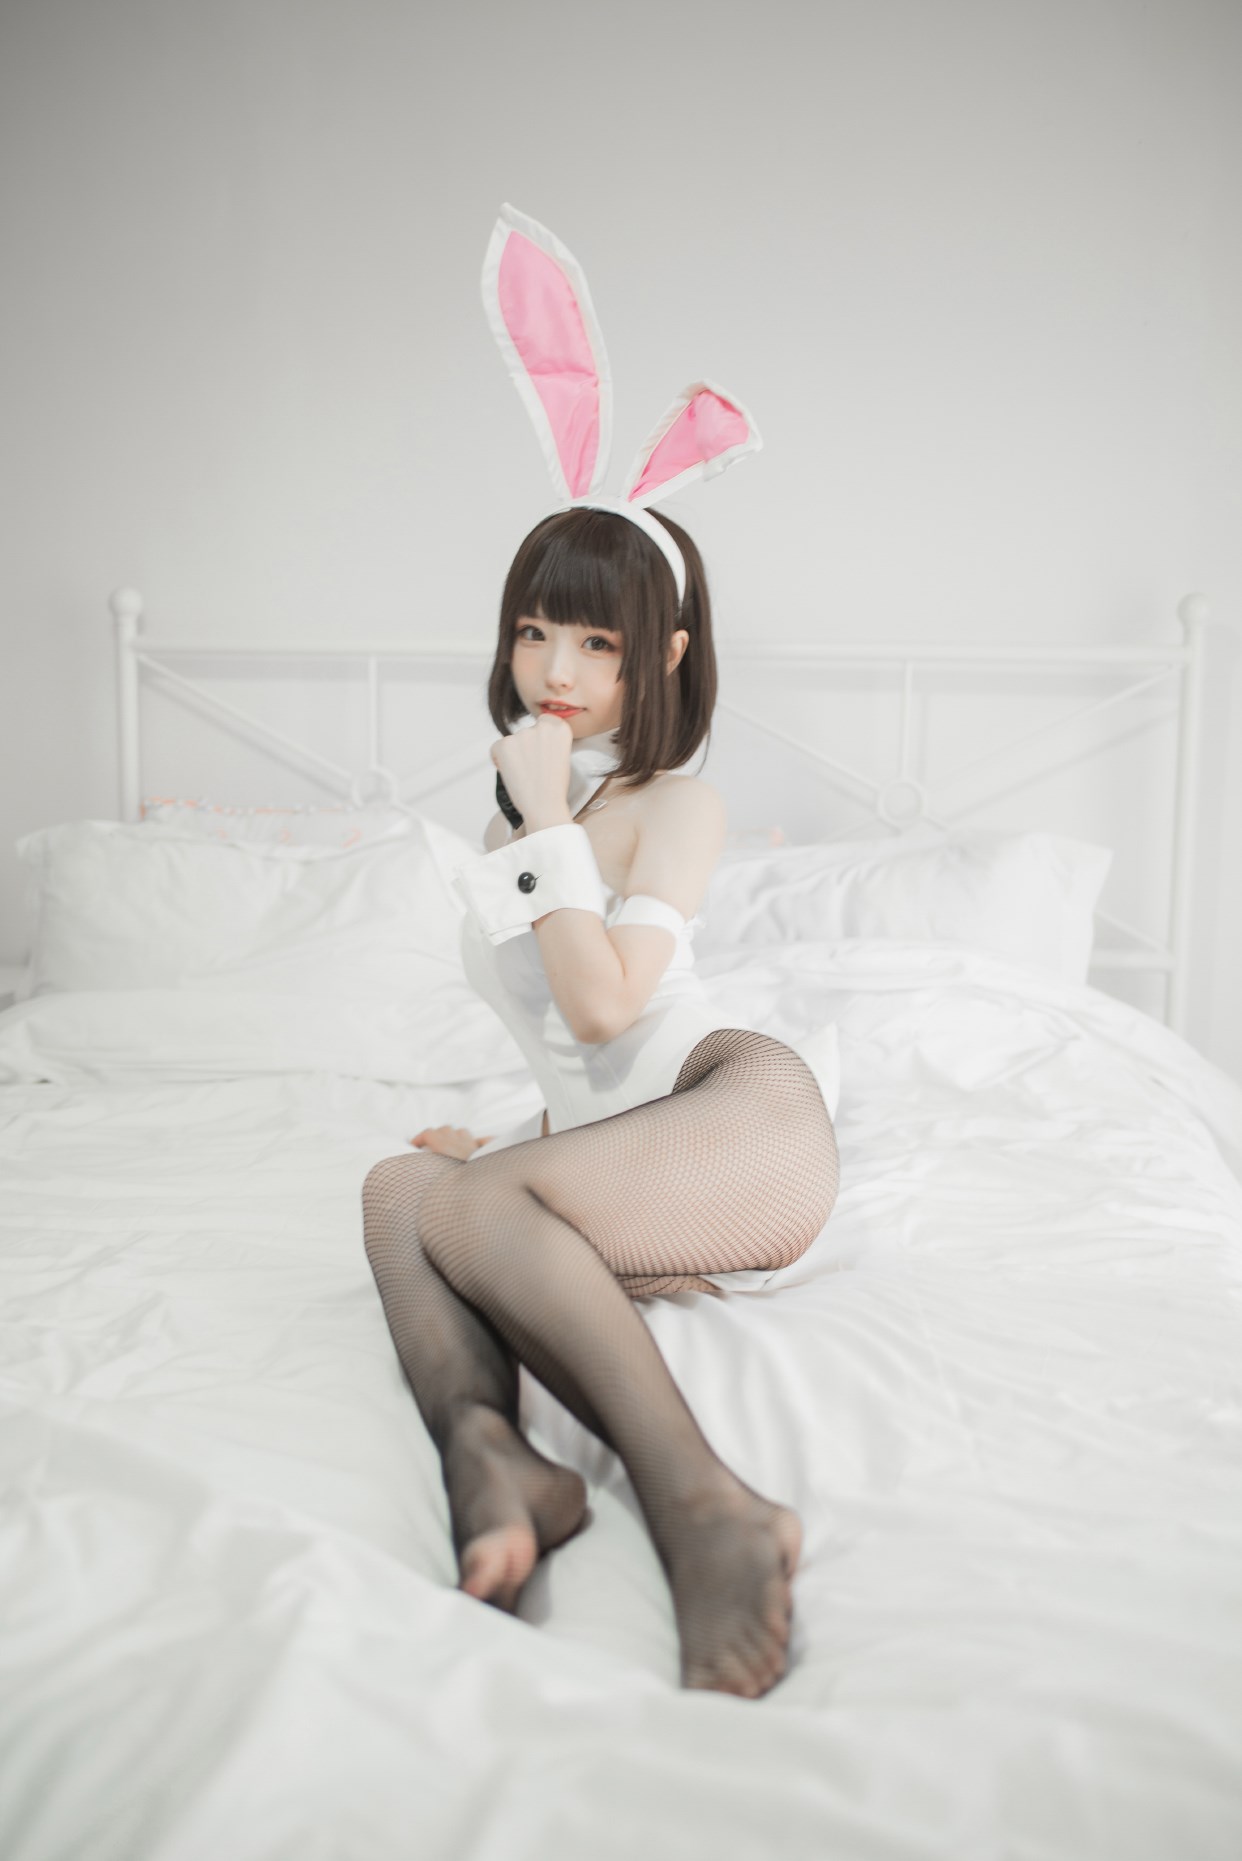 【兔玩映画】兔女郎vol.22-萝莉 兔玩映画 第12张